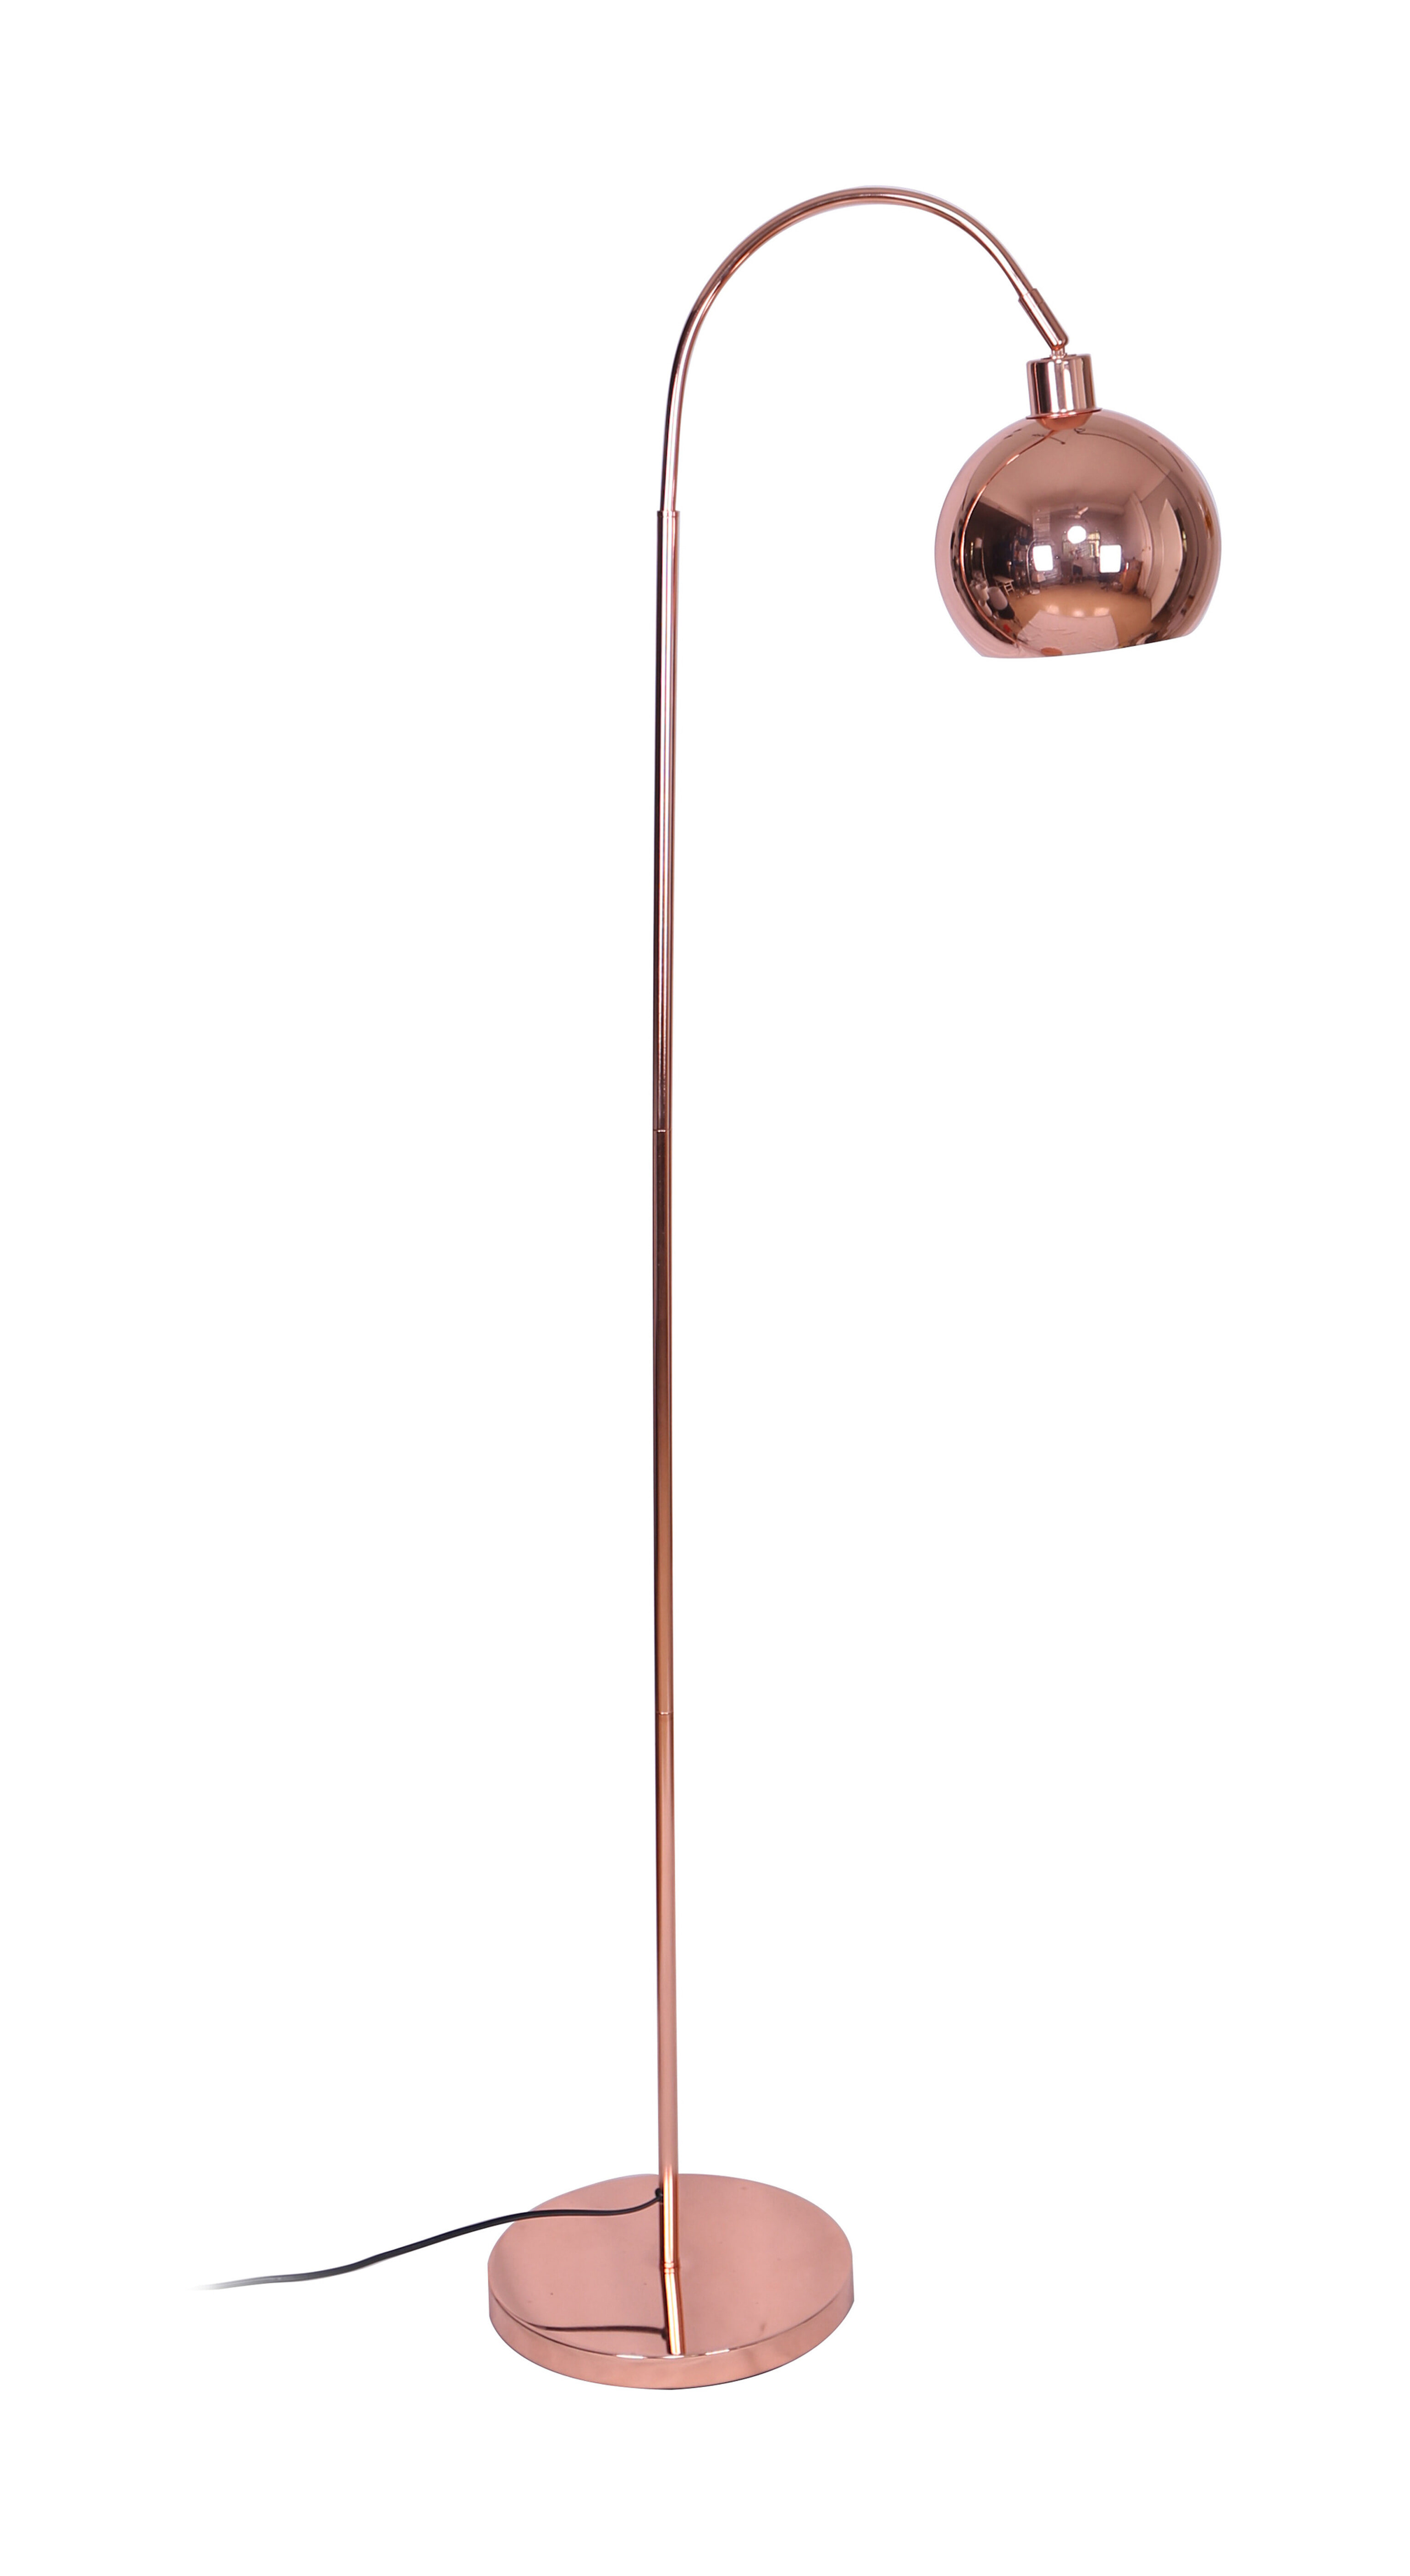 Artistiq Vloerlamp Foster 153cm hoog